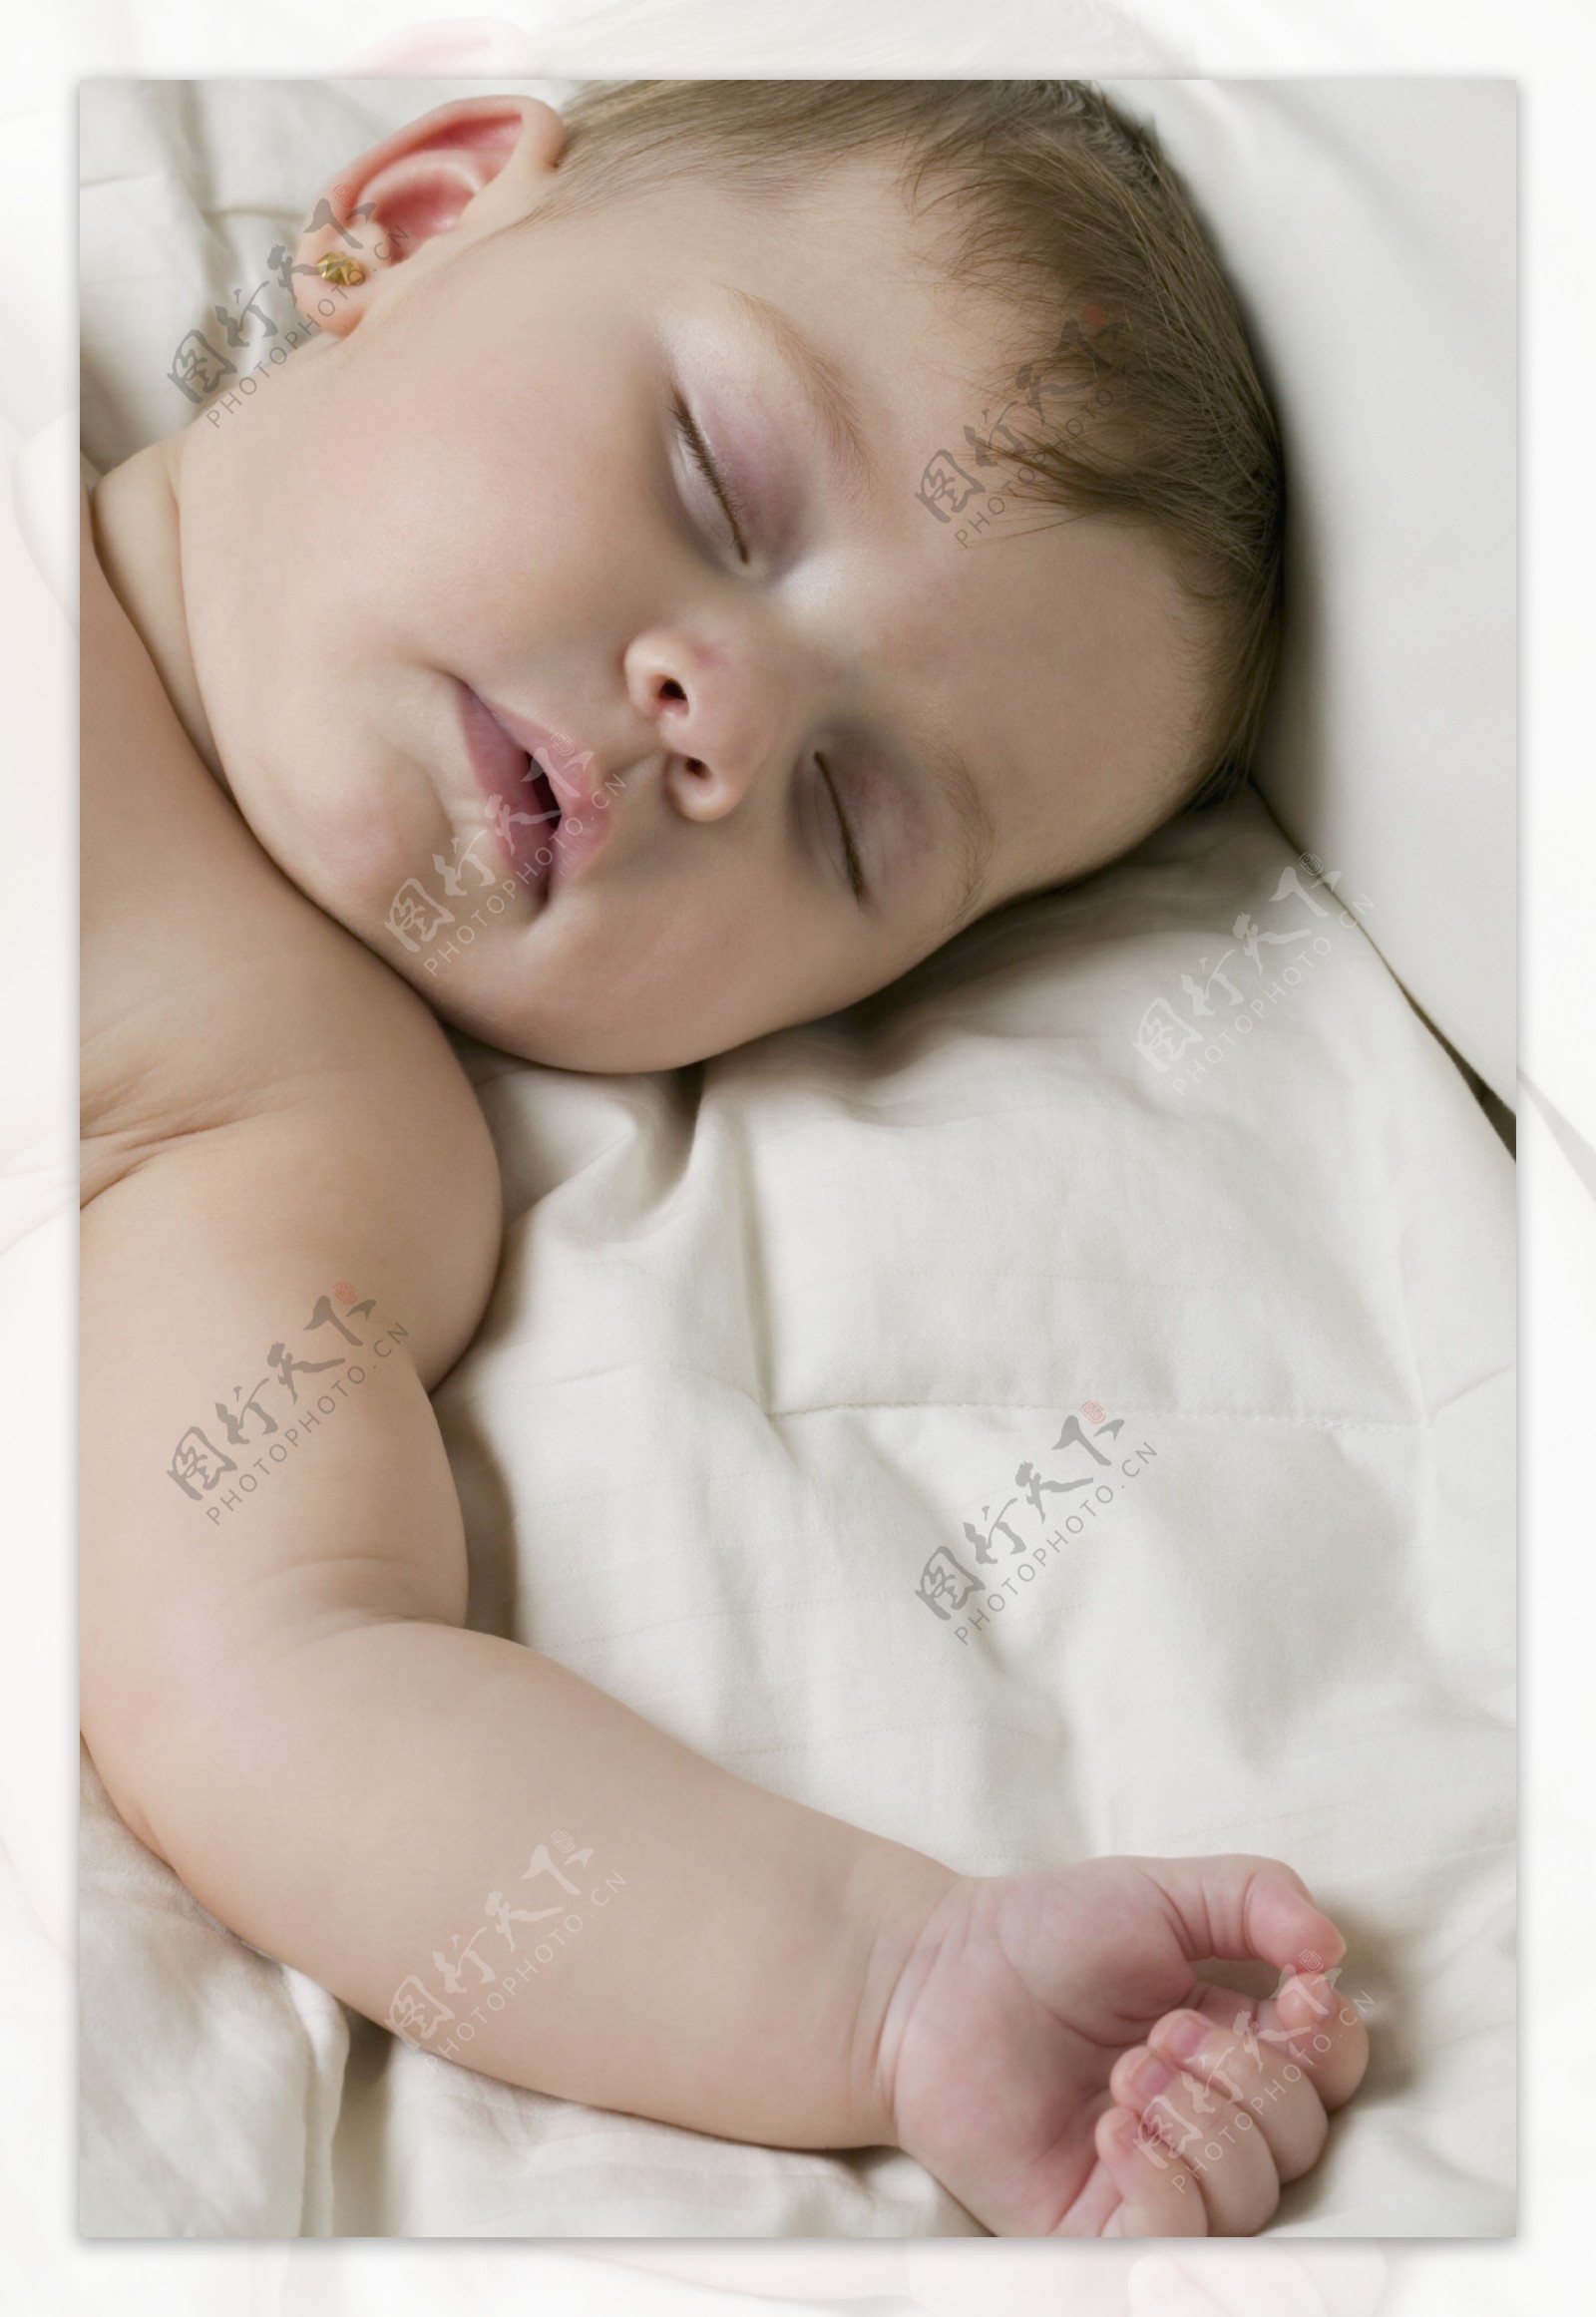 熟睡婴儿的脸部特写图片